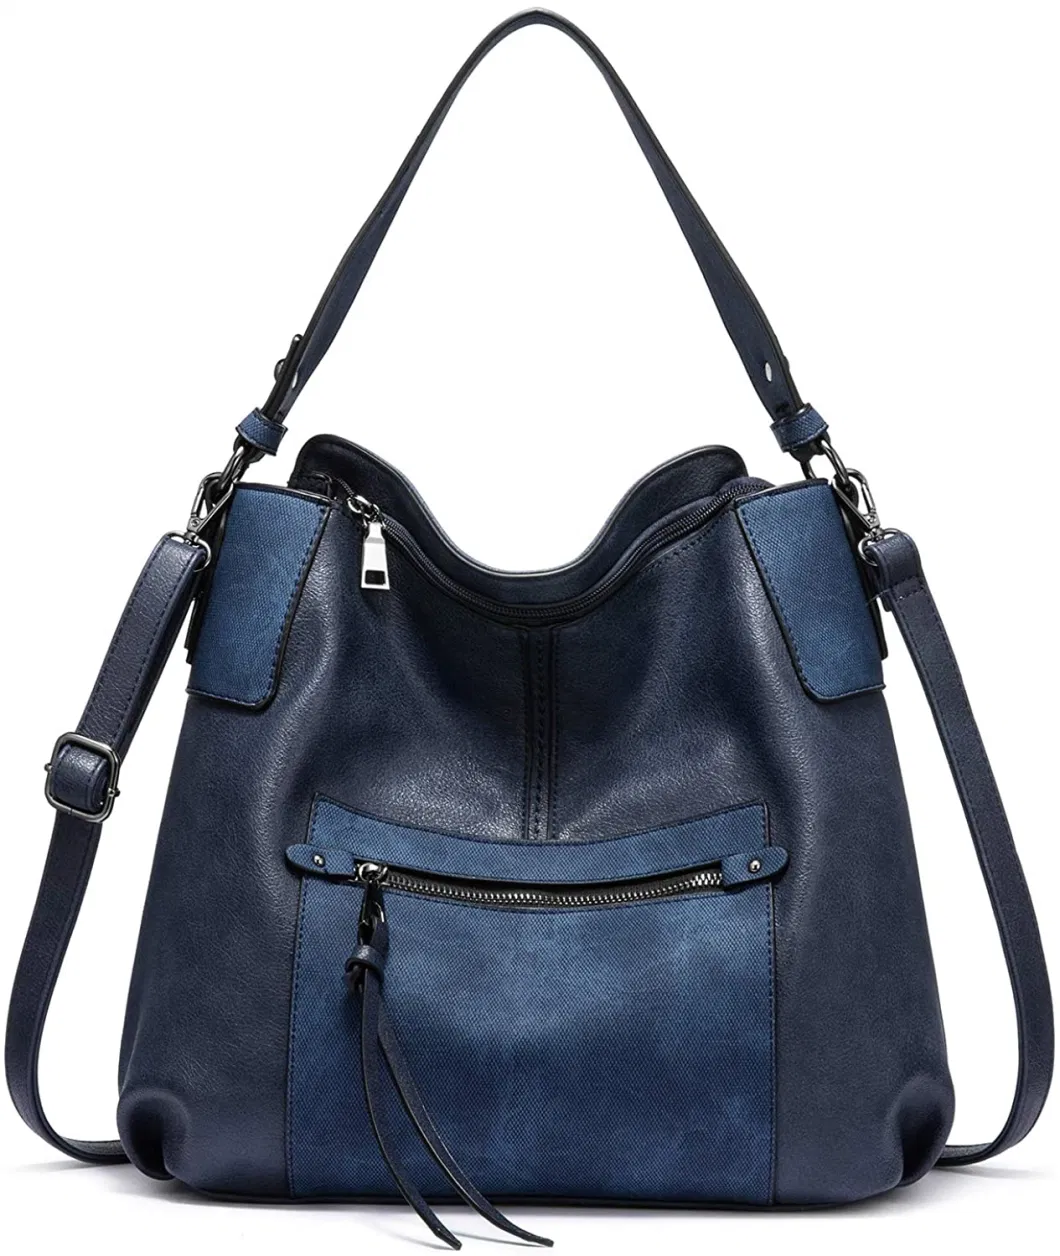 Wholesale Ladies Fashion Designer High Quality Hobo Handbag Tote Handbag